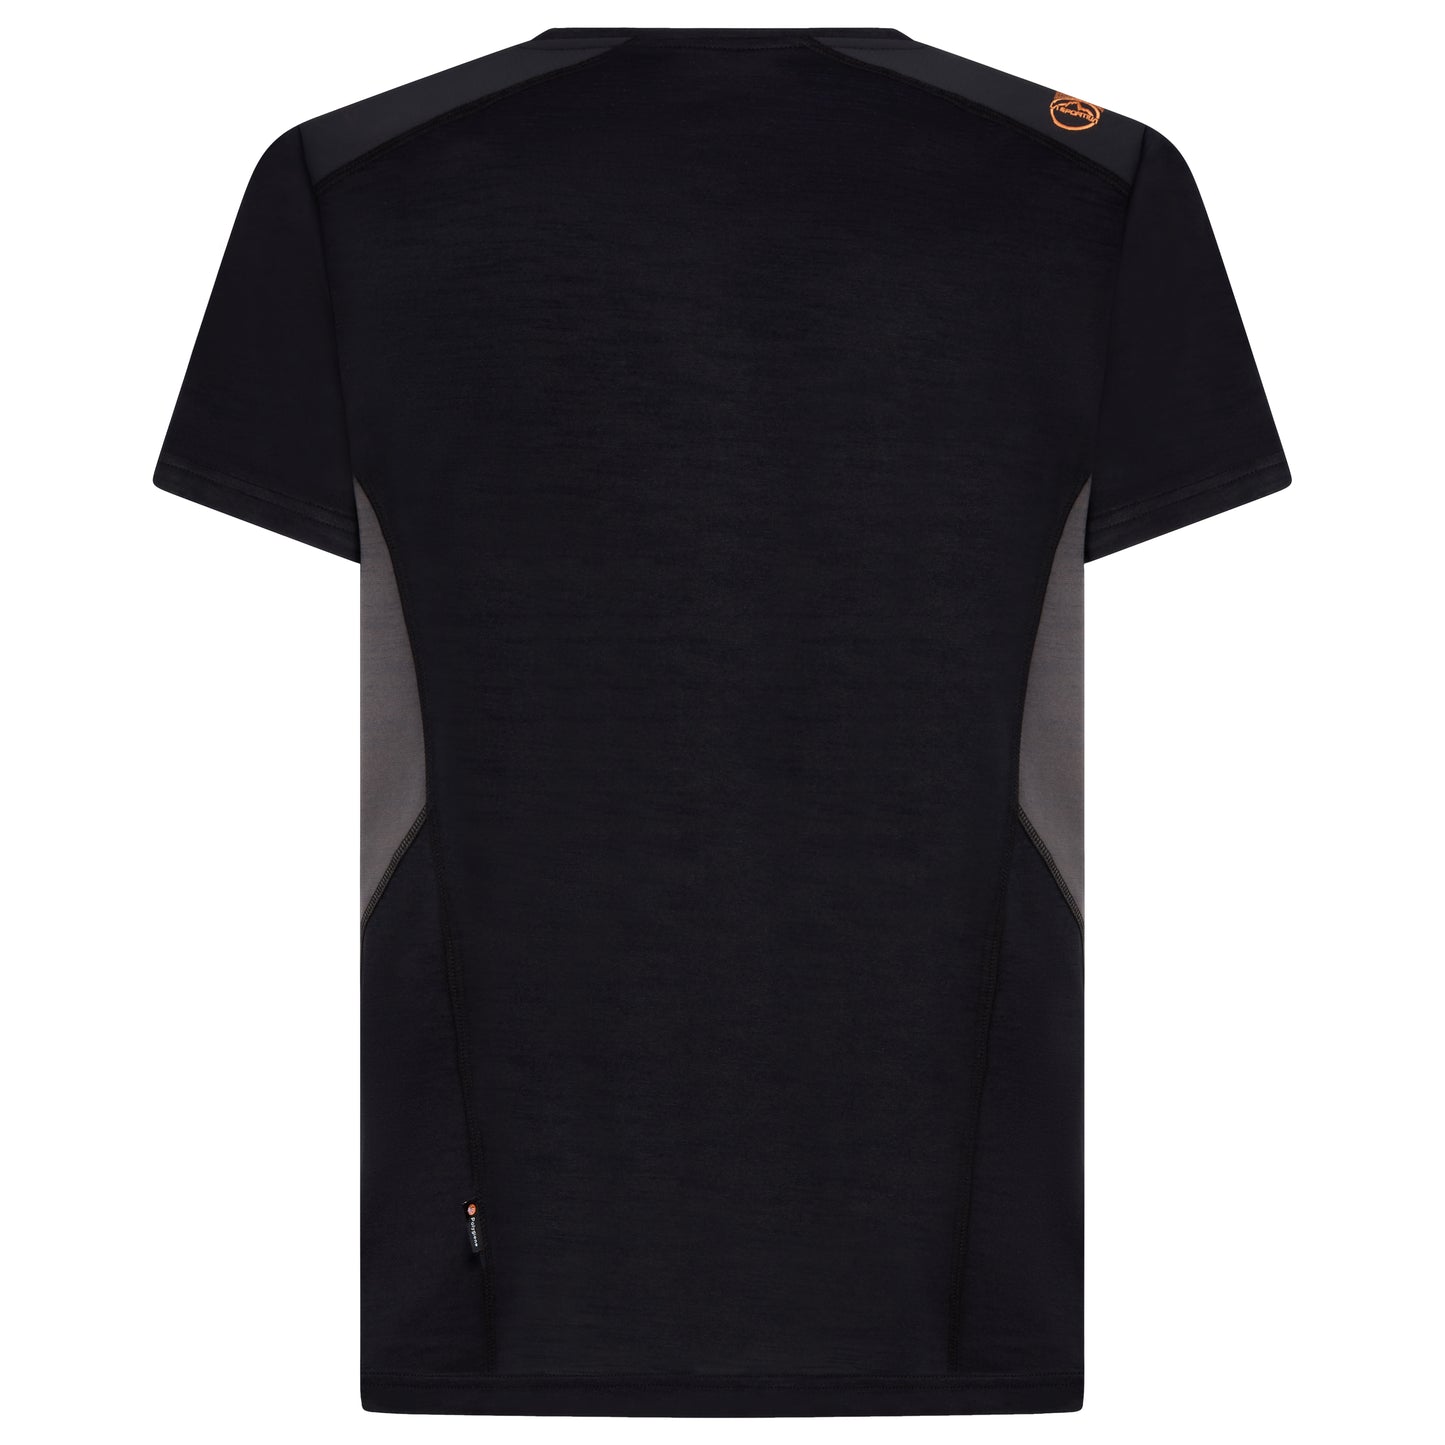 Embrace T-Shirt Man Black/Carbon